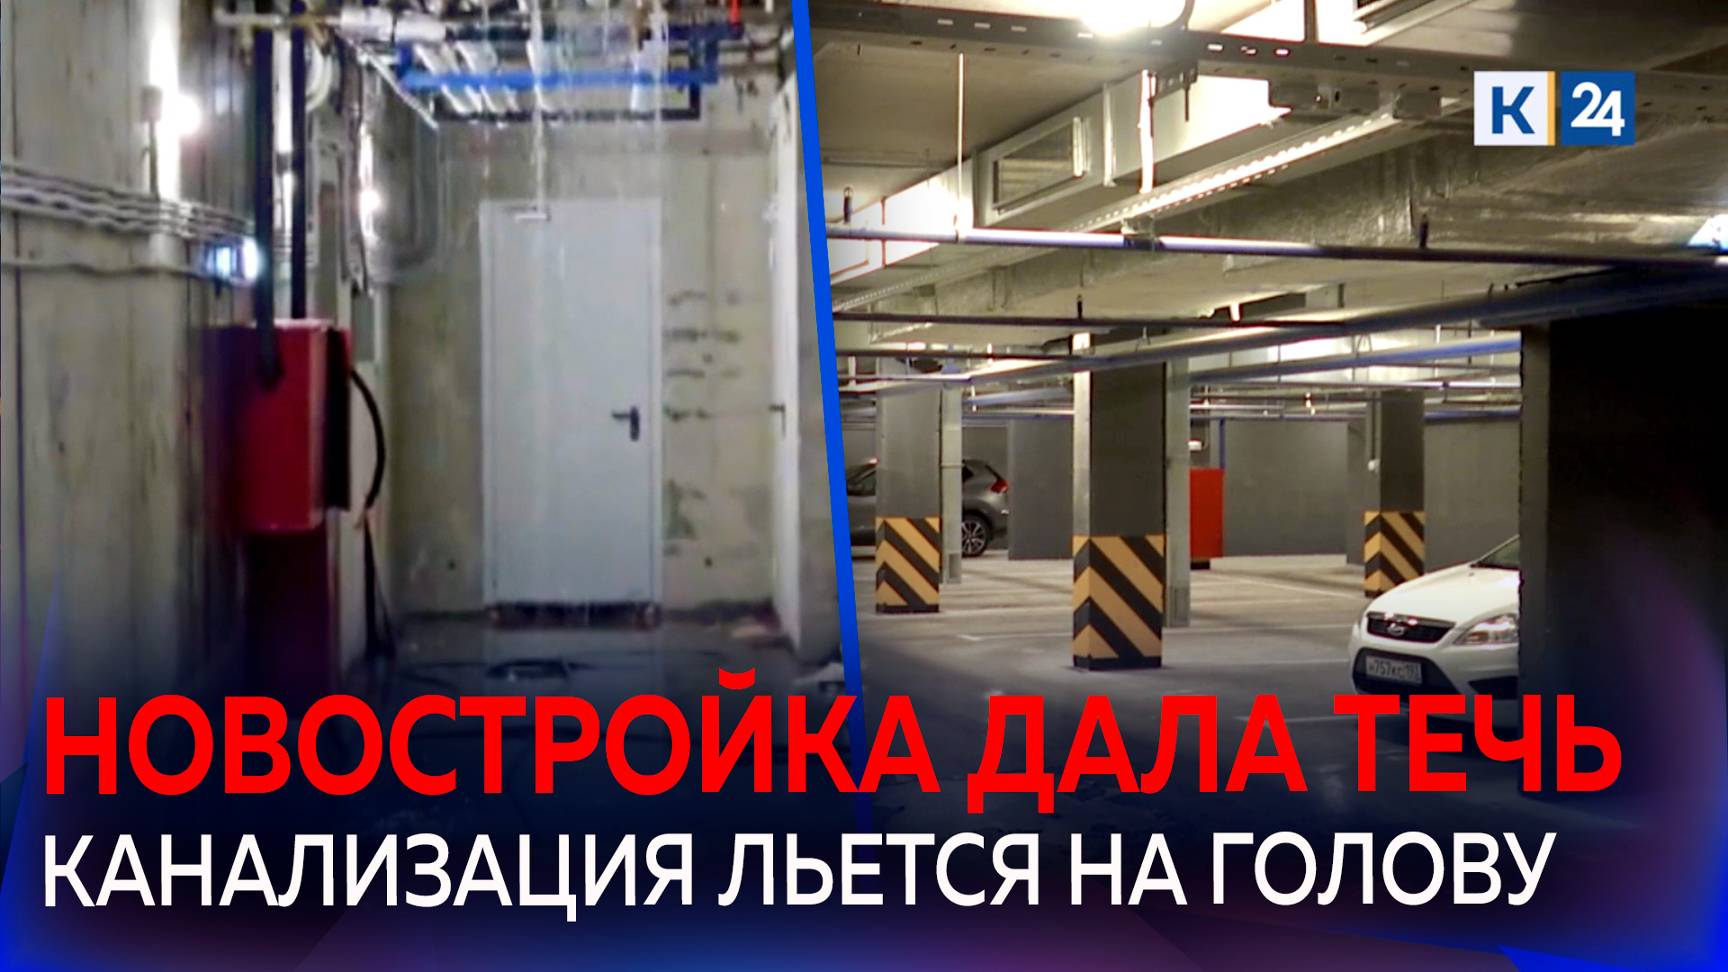 Канализация топит подвалы и паркинг жилого дома в Краснодаре